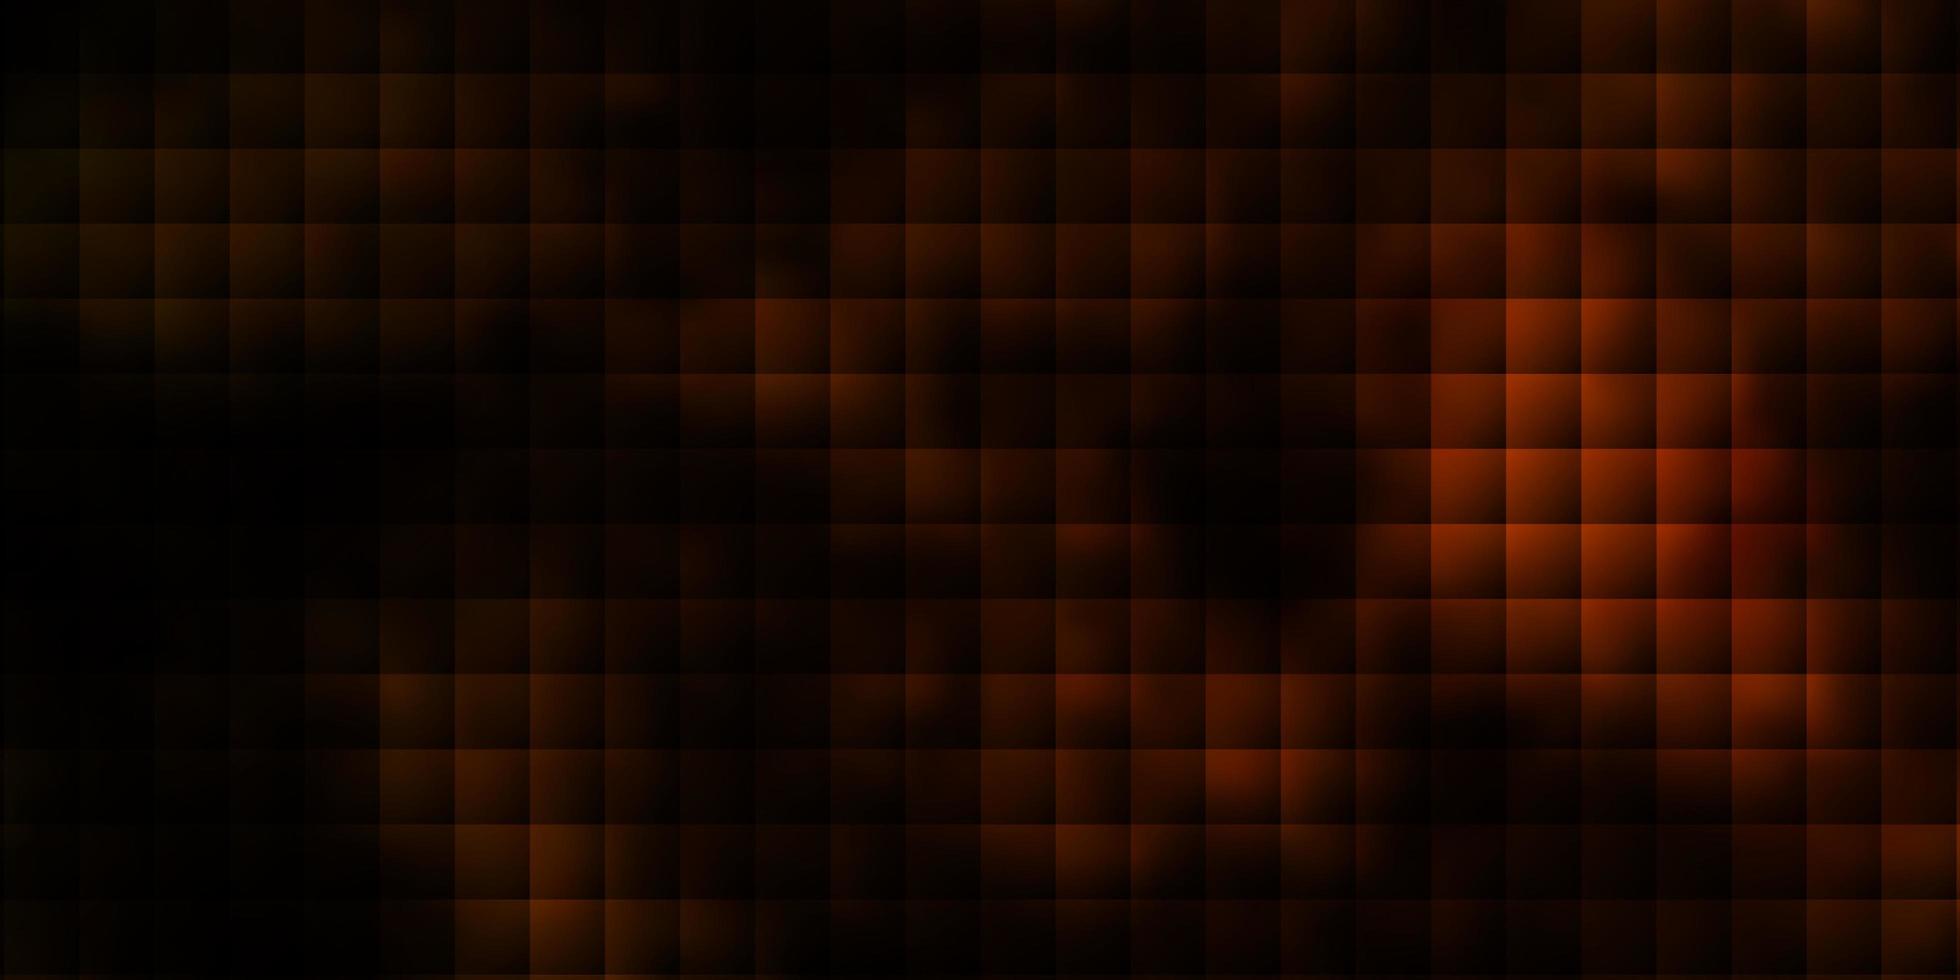 mörk orange vektor bakgrund i polygonal stil.